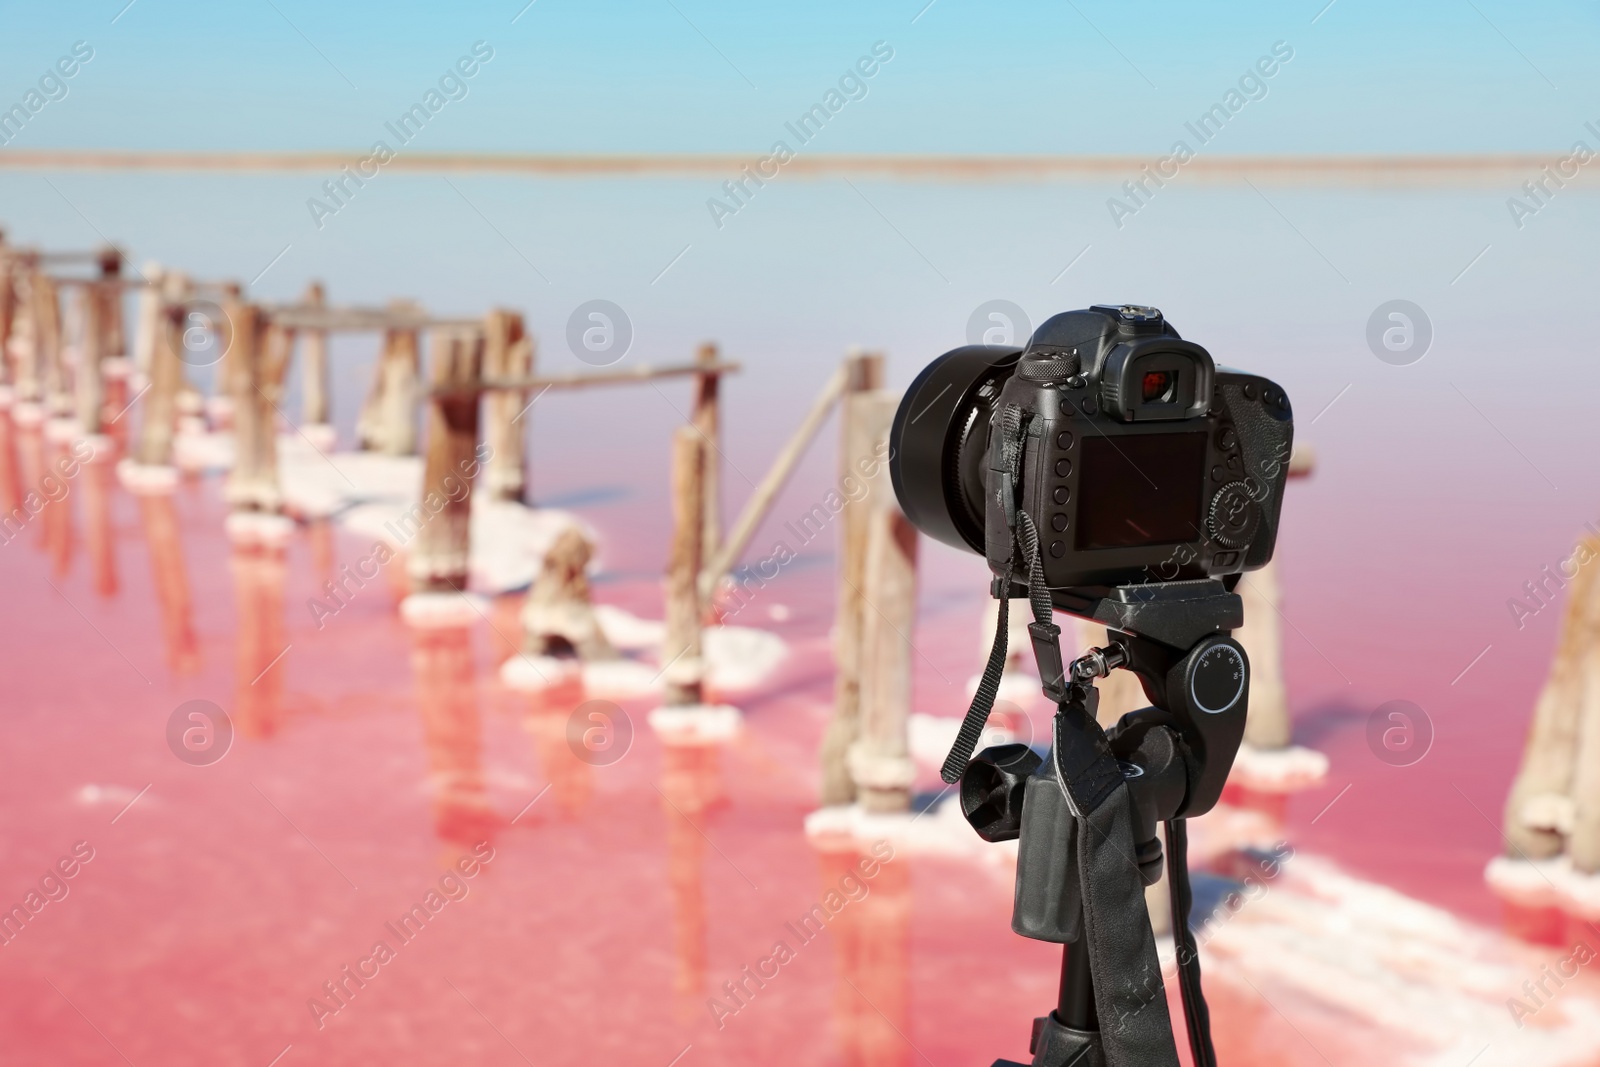 Photo of Professional camera with tripod near pink lake